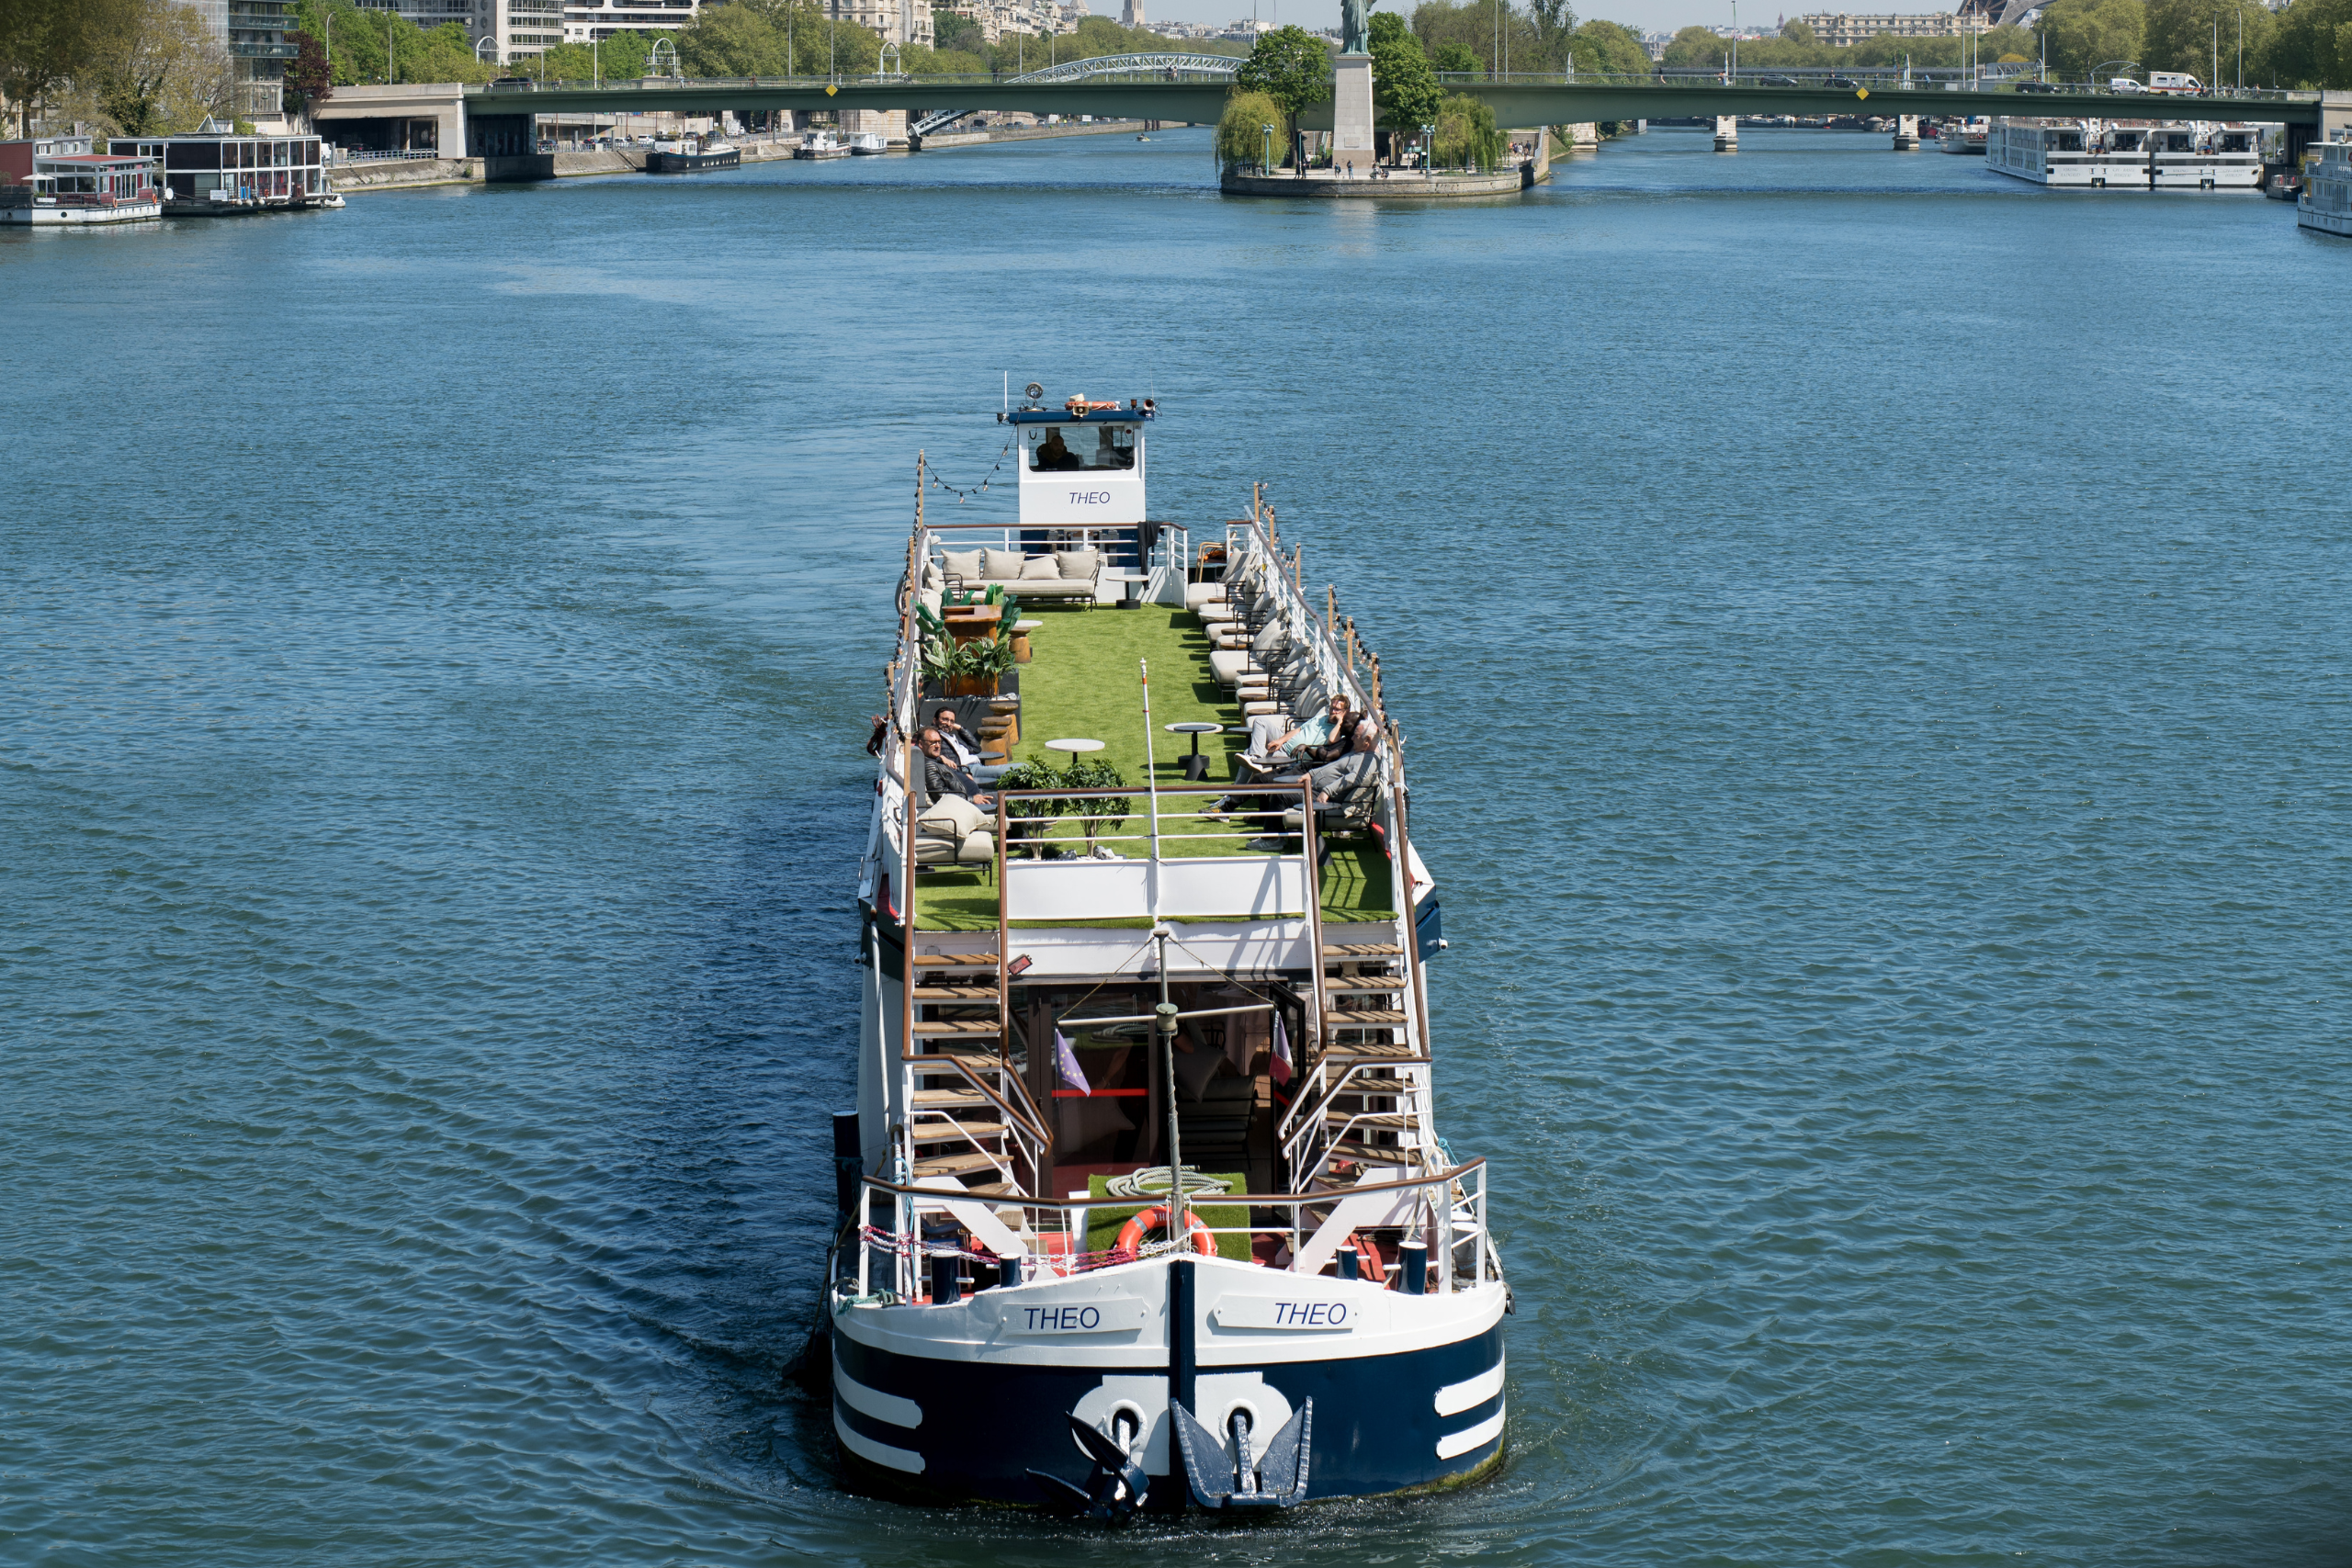 Réservation d’un bateau mouche à Paris